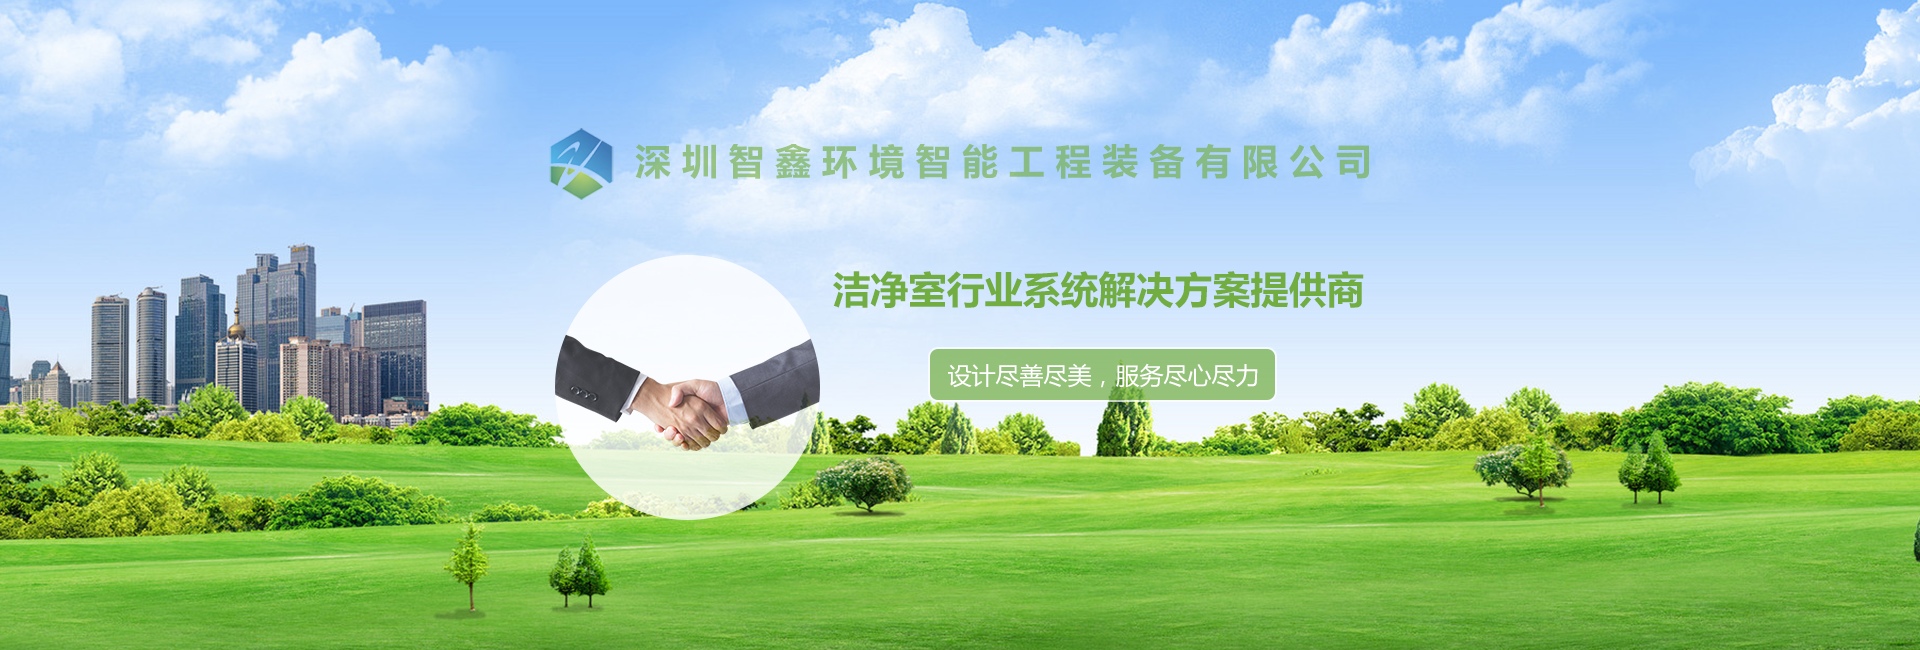 深圳智鑫环境智能工程装备有限公司与我司签订网站建设协议